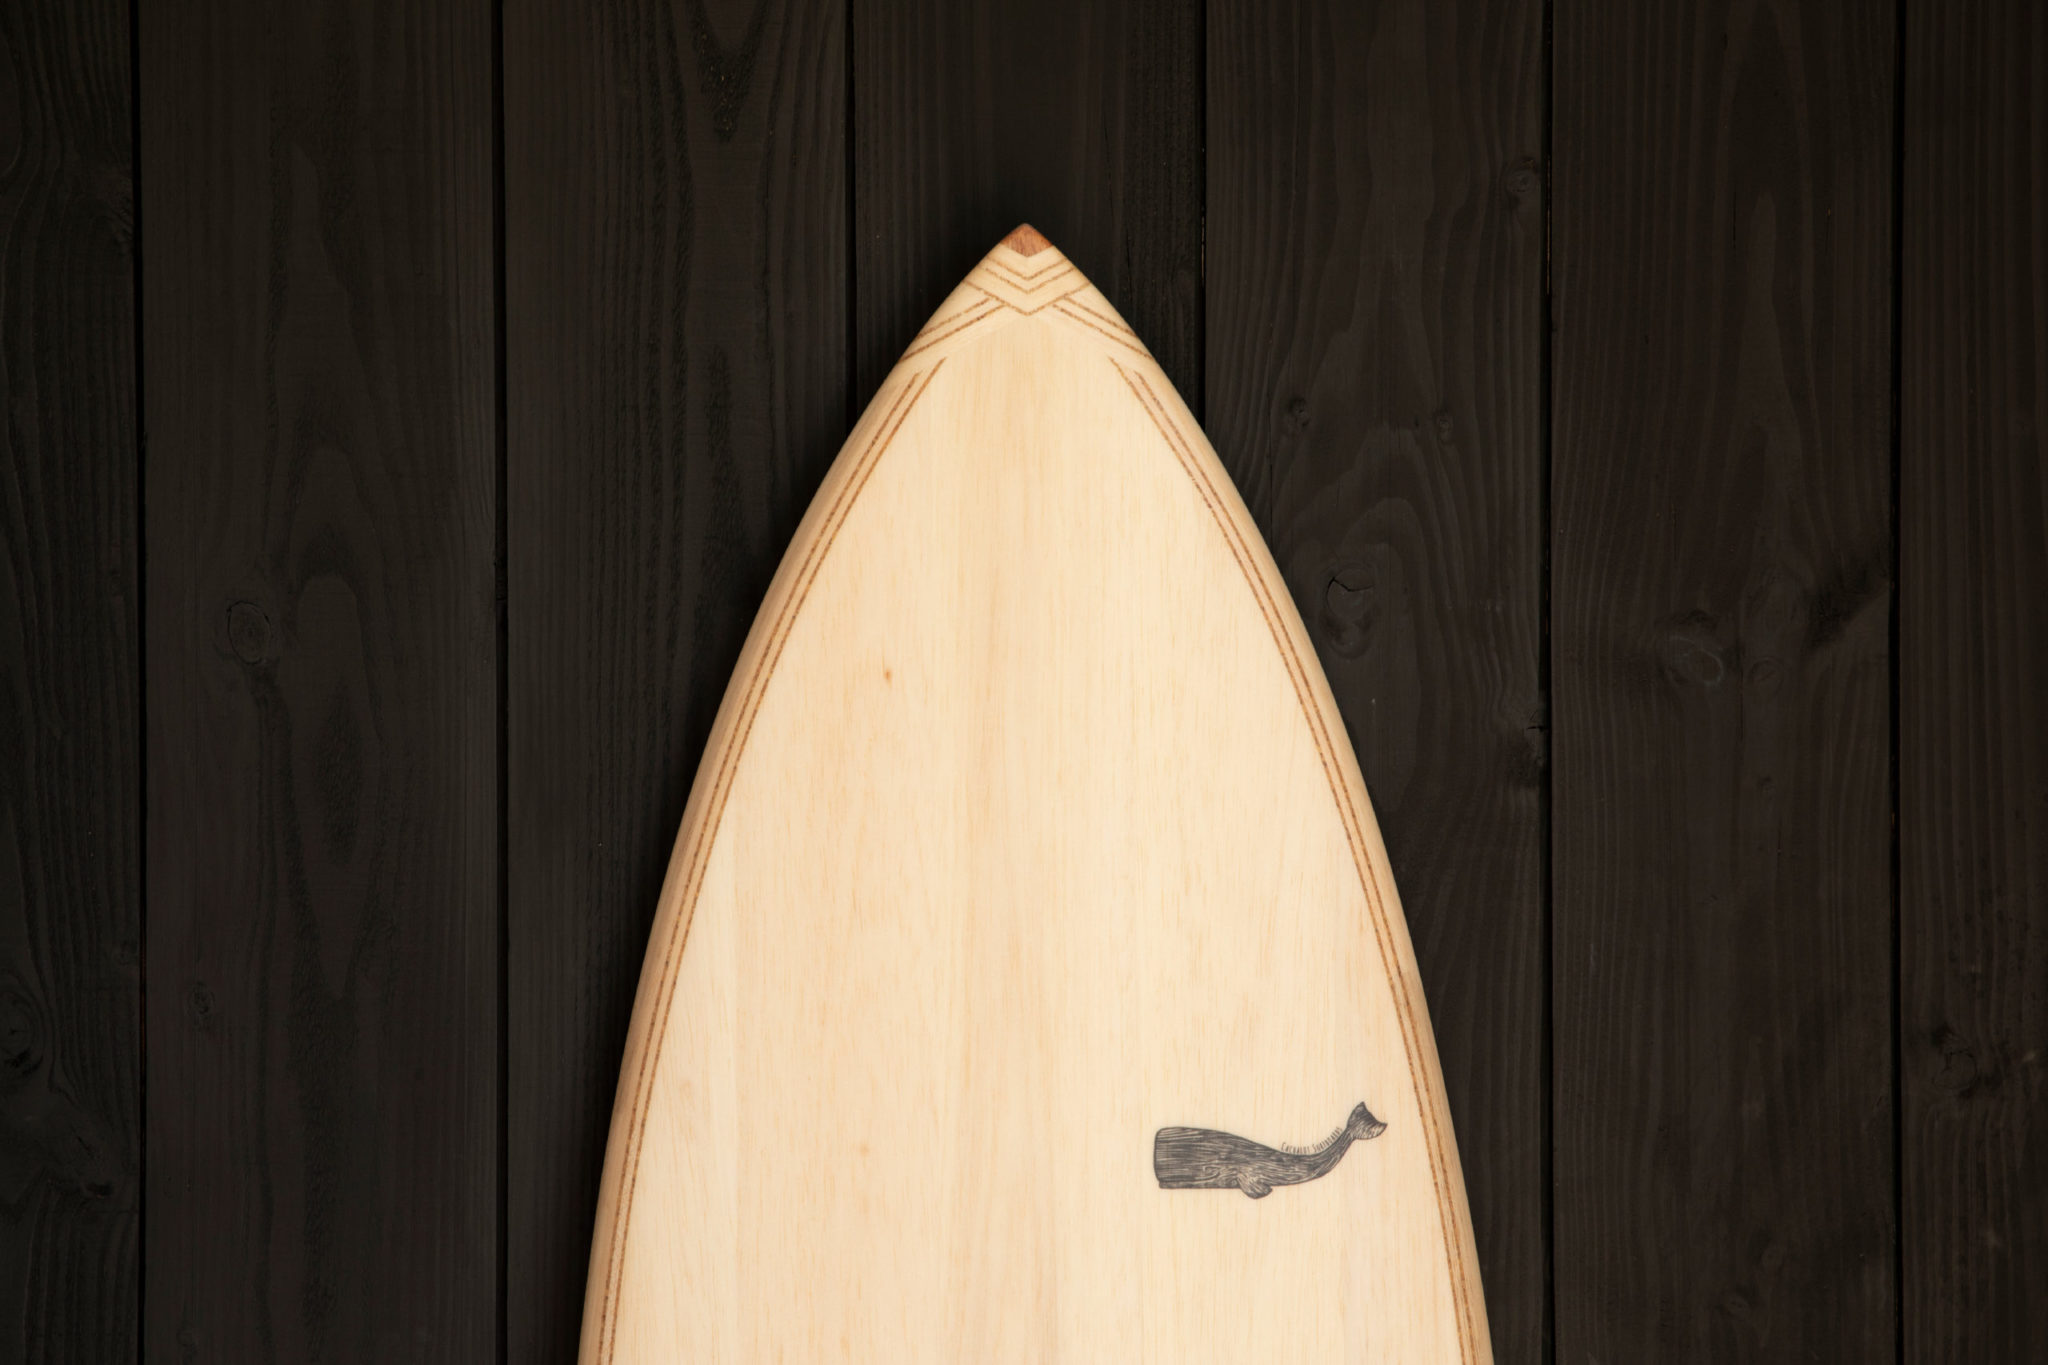 cachalot surfboards artisan hand shaper surf bois hollow wooden hareng julien Mavier